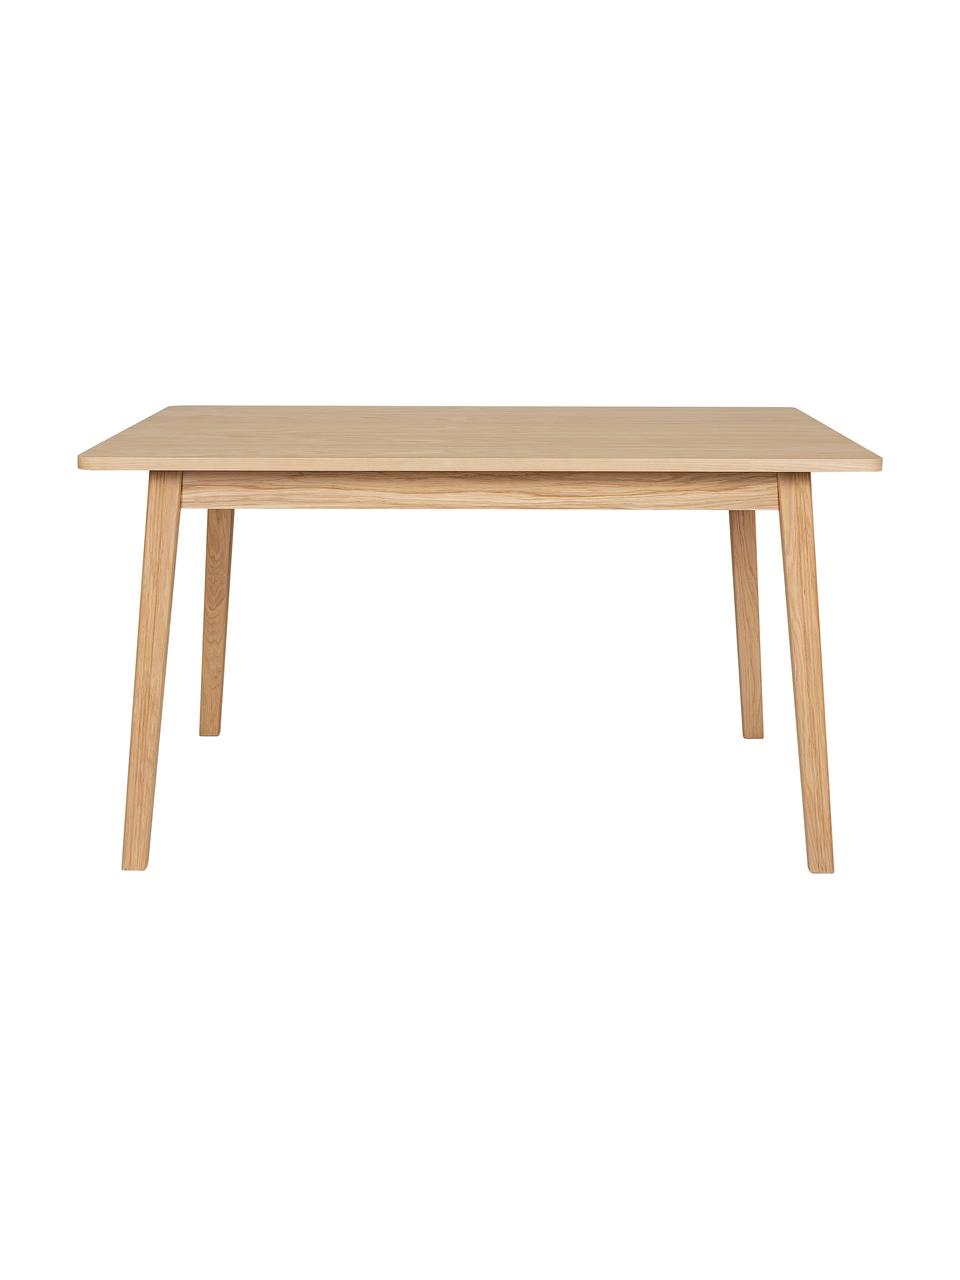 Dřevěný jídelní stůl Skagen, 180 cm x 90 cm, Dubové dřevo, Š 180 cm, H 90 cm